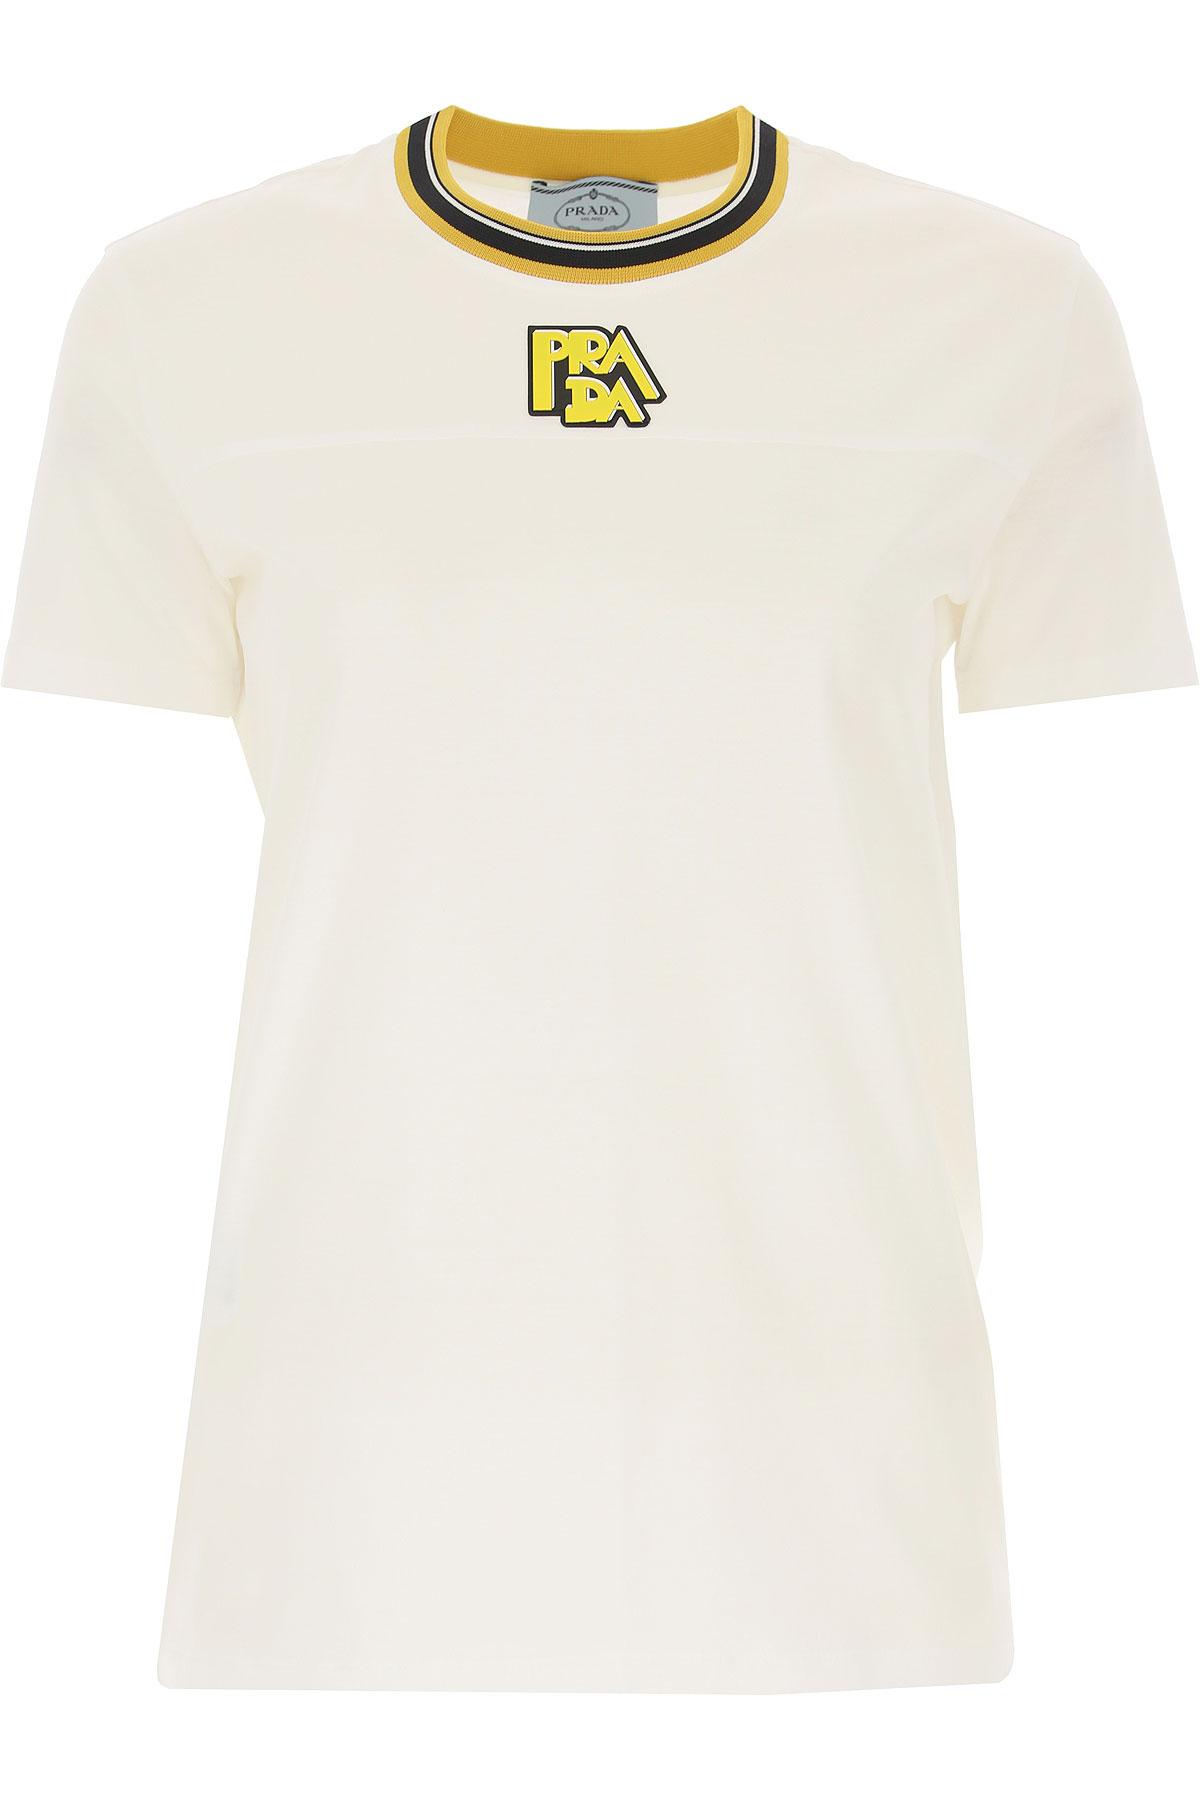 Prada T-shirt For Women in White - Lyst